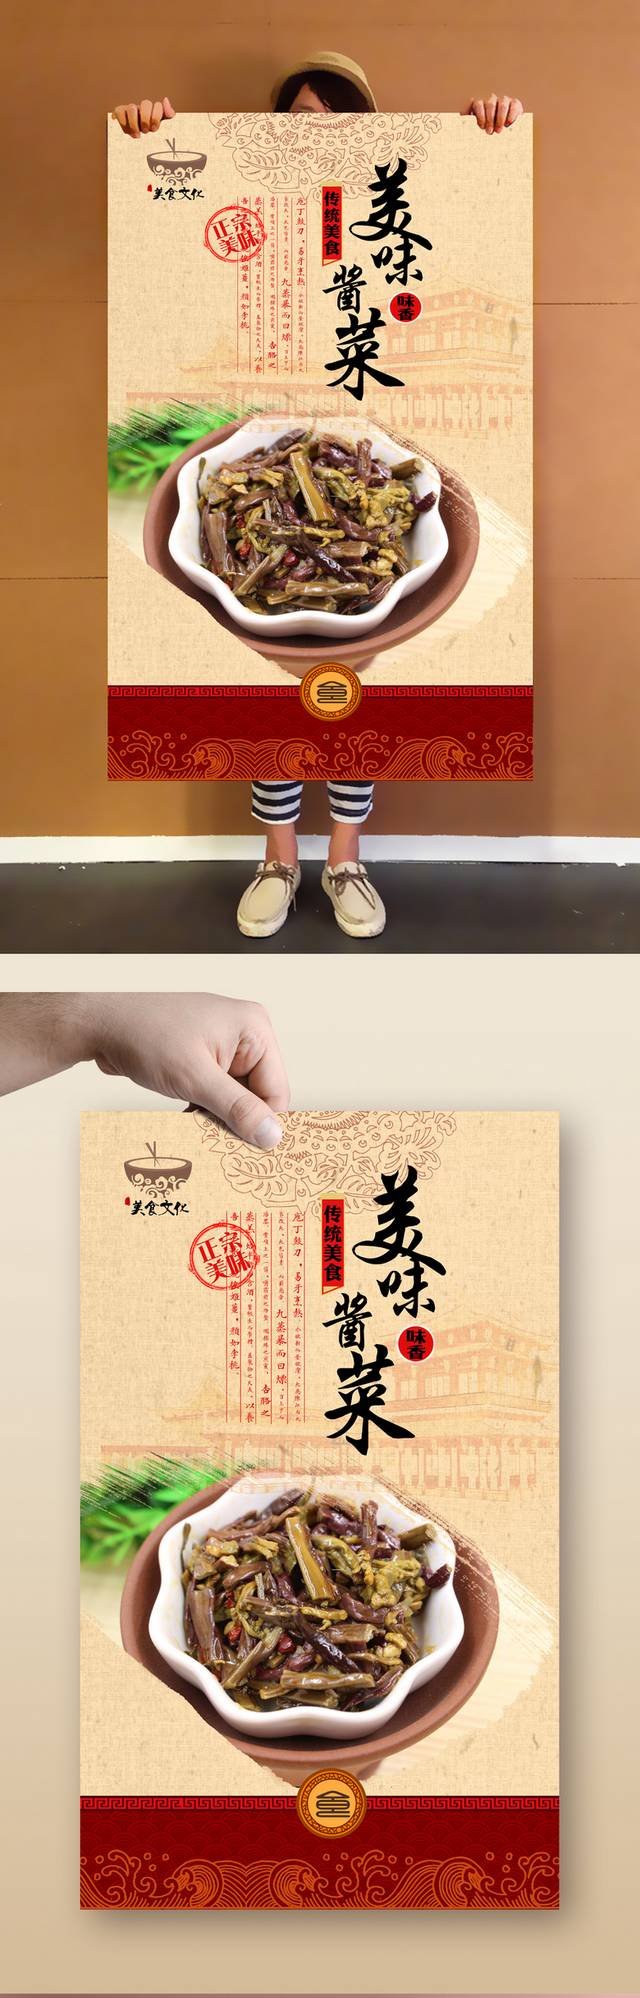 经典中国风酱菜海报设计